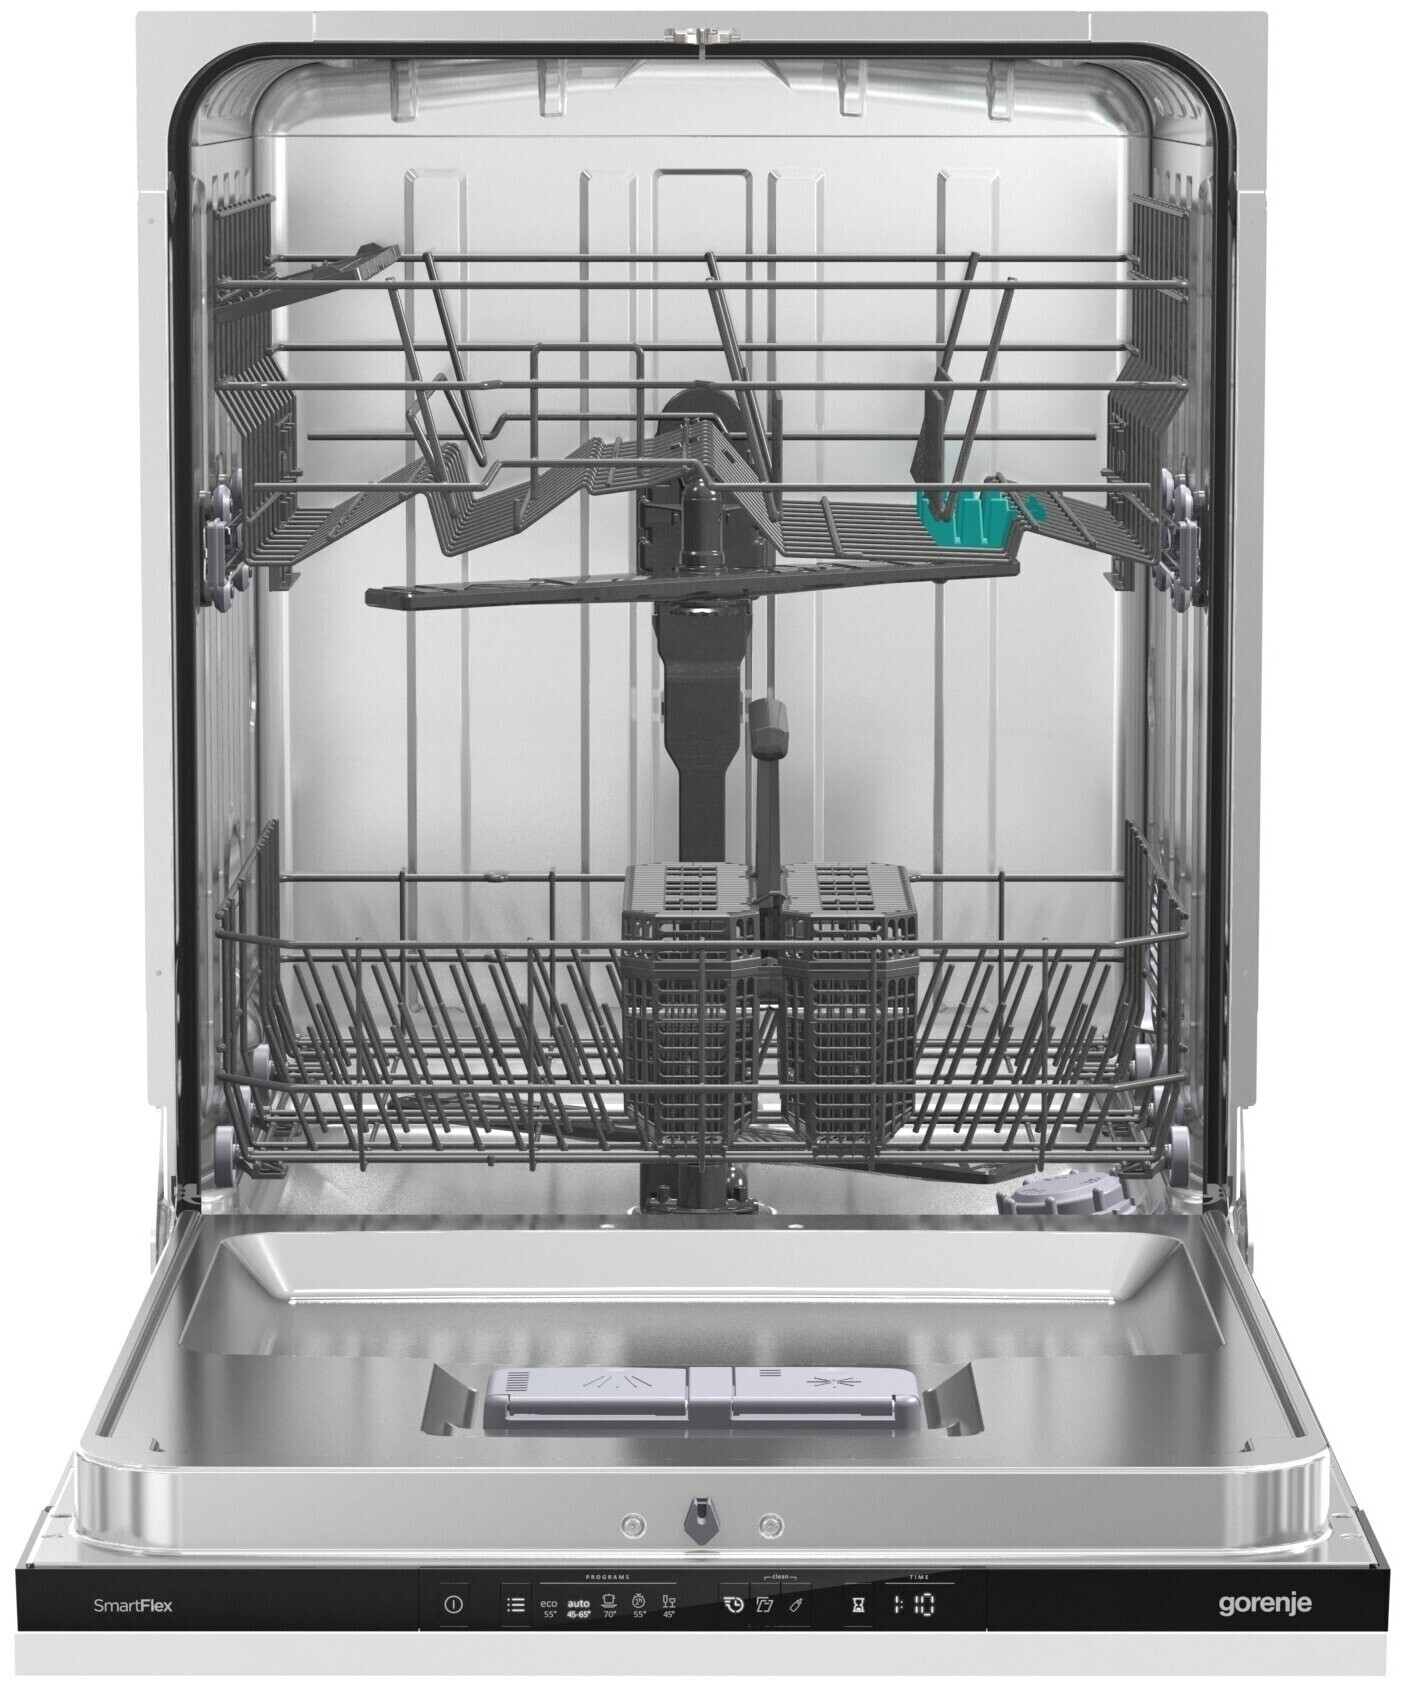 Машина gorenje gv663c61. Посудомоечная машина Gorenje gv671c60. Встраиваемая посудомоечная машина Gorenje gv631d60. Посудомоечная машина Gorenje gv672c62. Gorenje gv661d60.